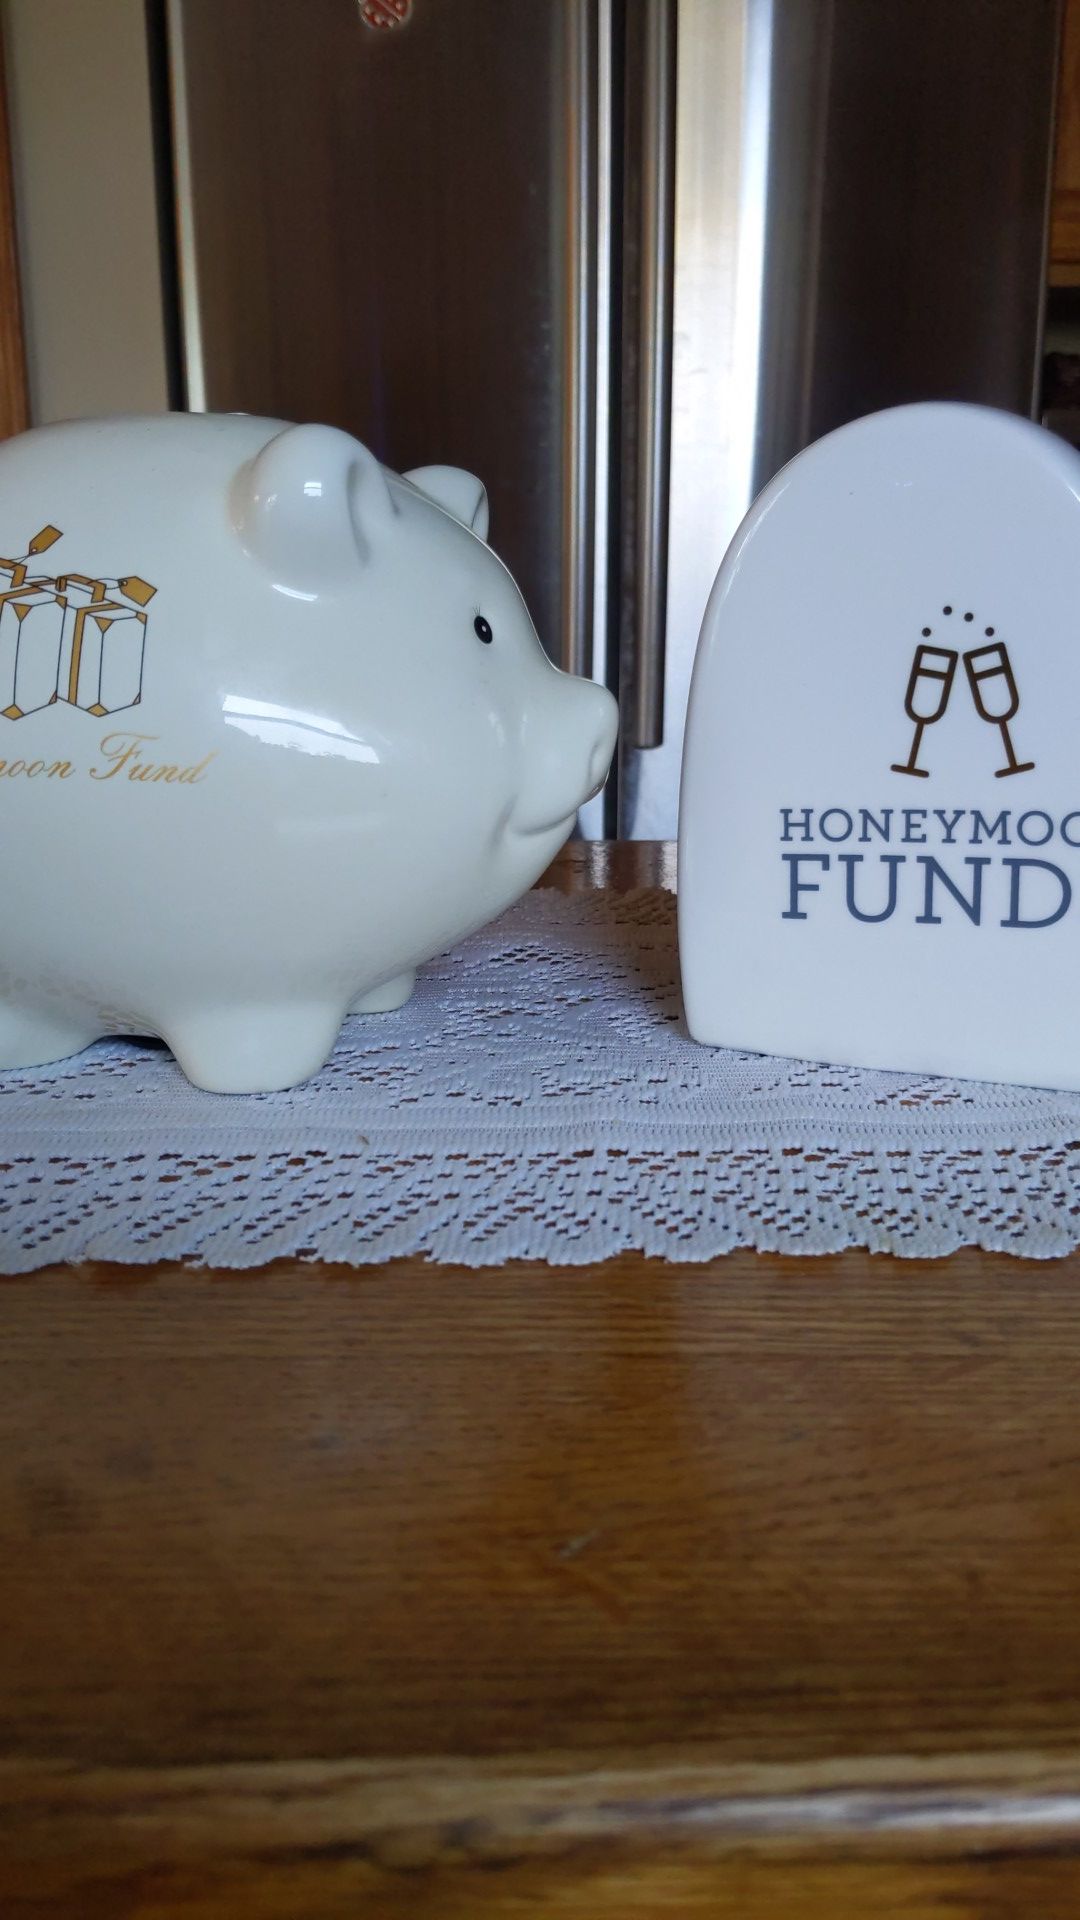 Russ Honeymoon "Fund" Ceramic Banks